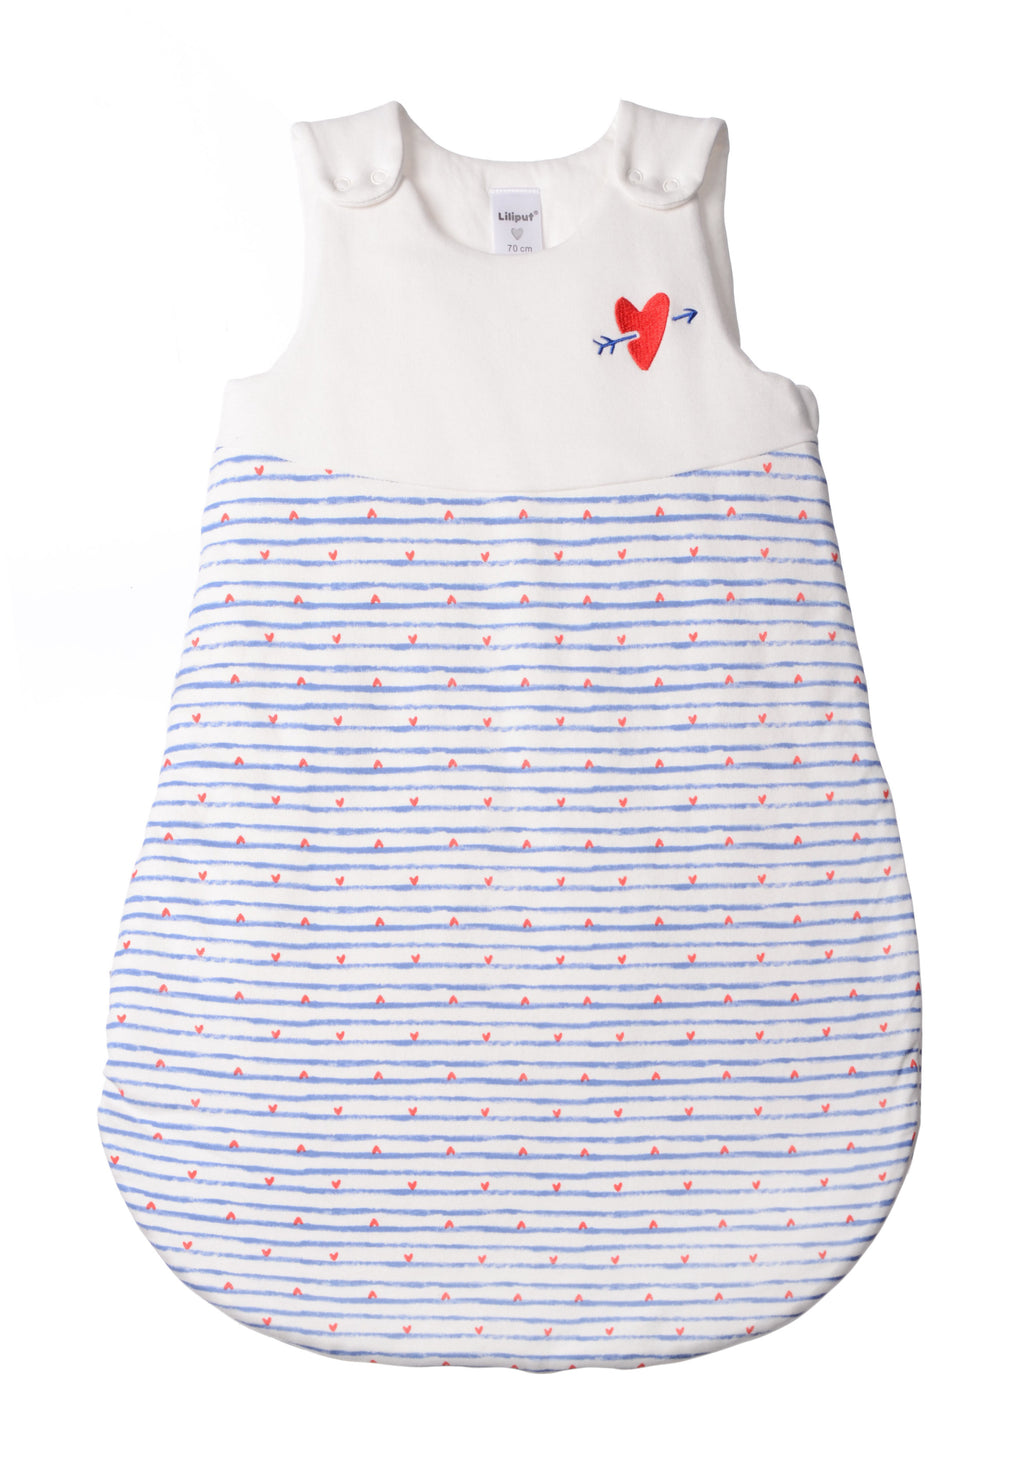 Schlafsack für Babys in unterschiedlichen Längen mit Knöpfen und Reißverschluss an der Seite. Design:  blaue Streifen mit roten Herzchen und Herz Stickerei